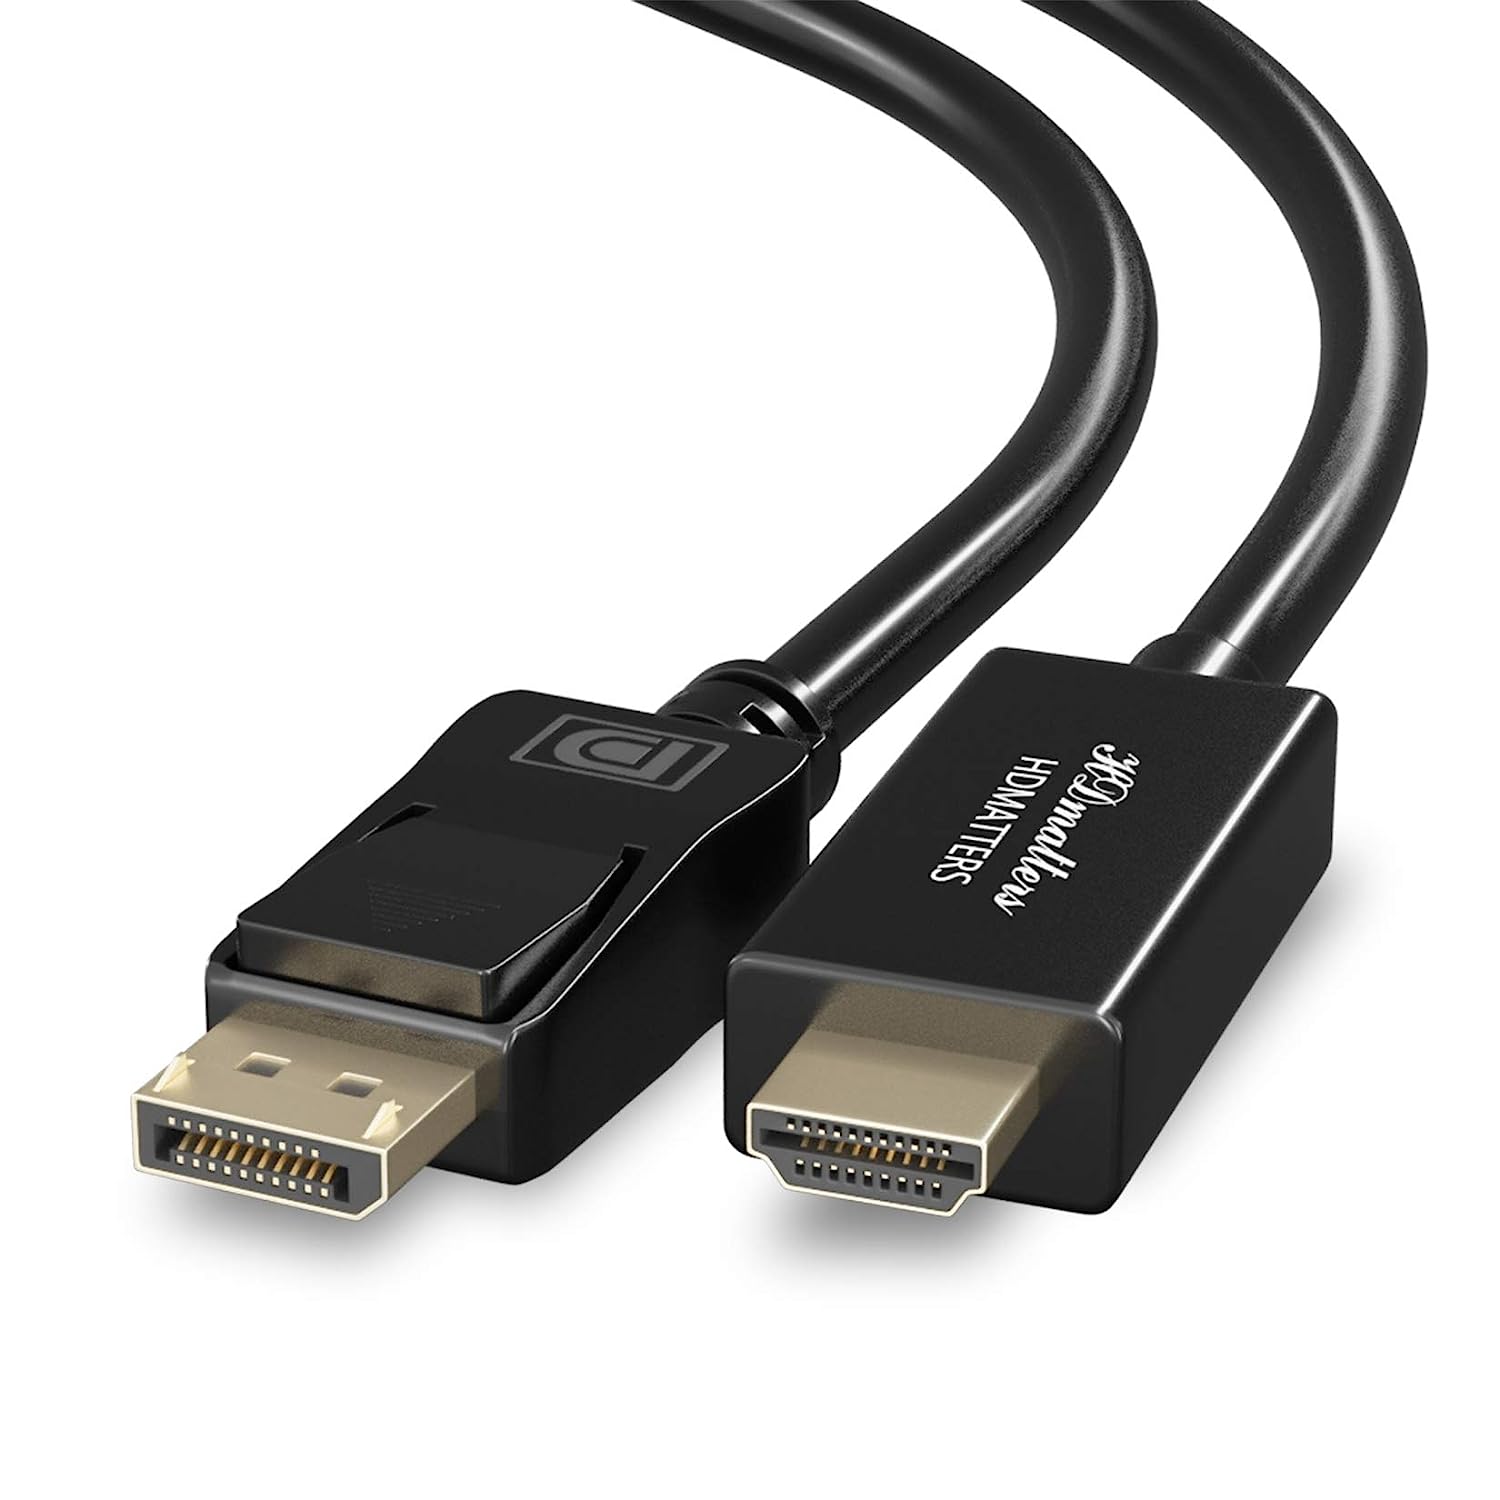 Mini Dp-HDMI Adopter - Black